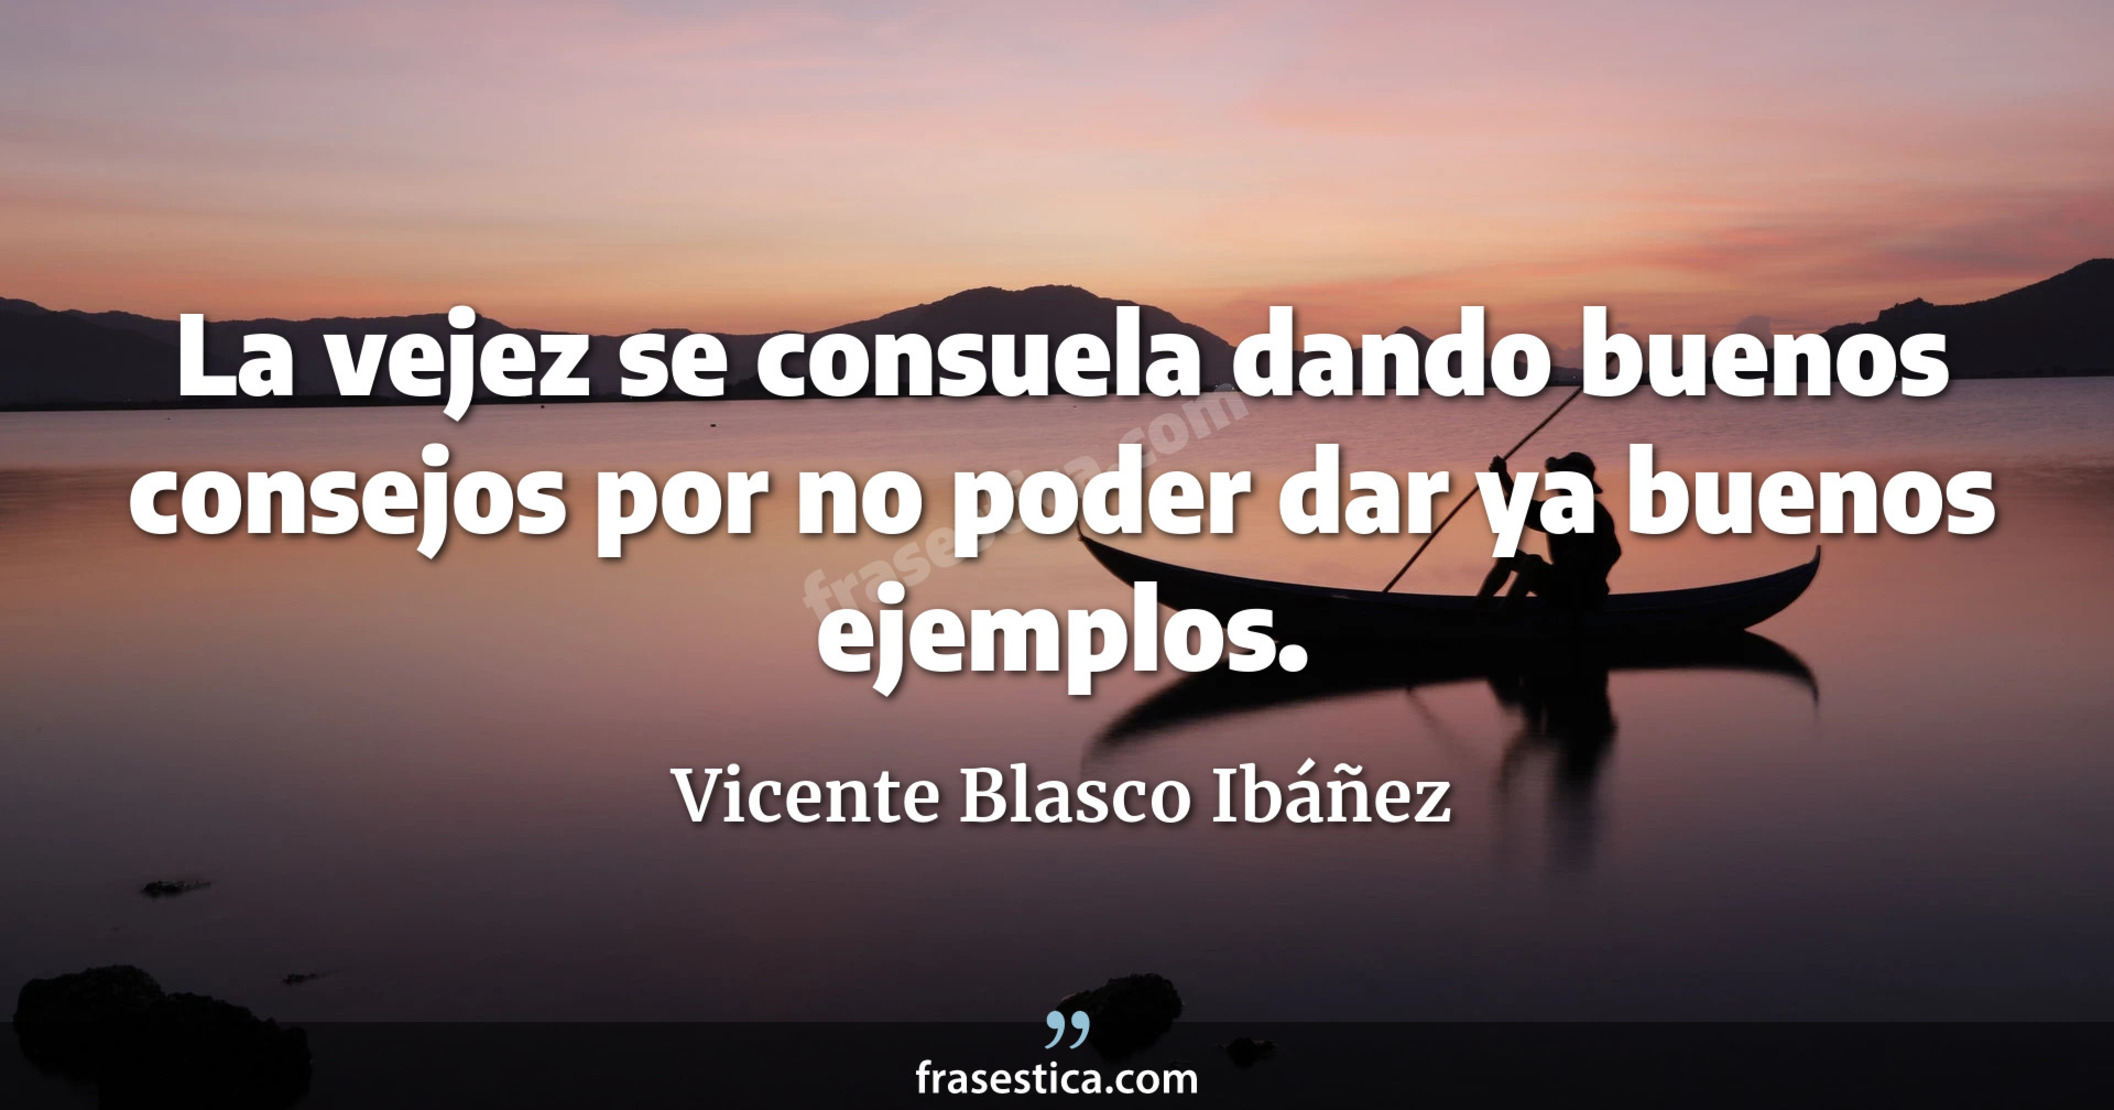 La vejez se consuela dando buenos consejos por no poder dar ya buenos ejemplos. - Vicente Blasco Ibáñez